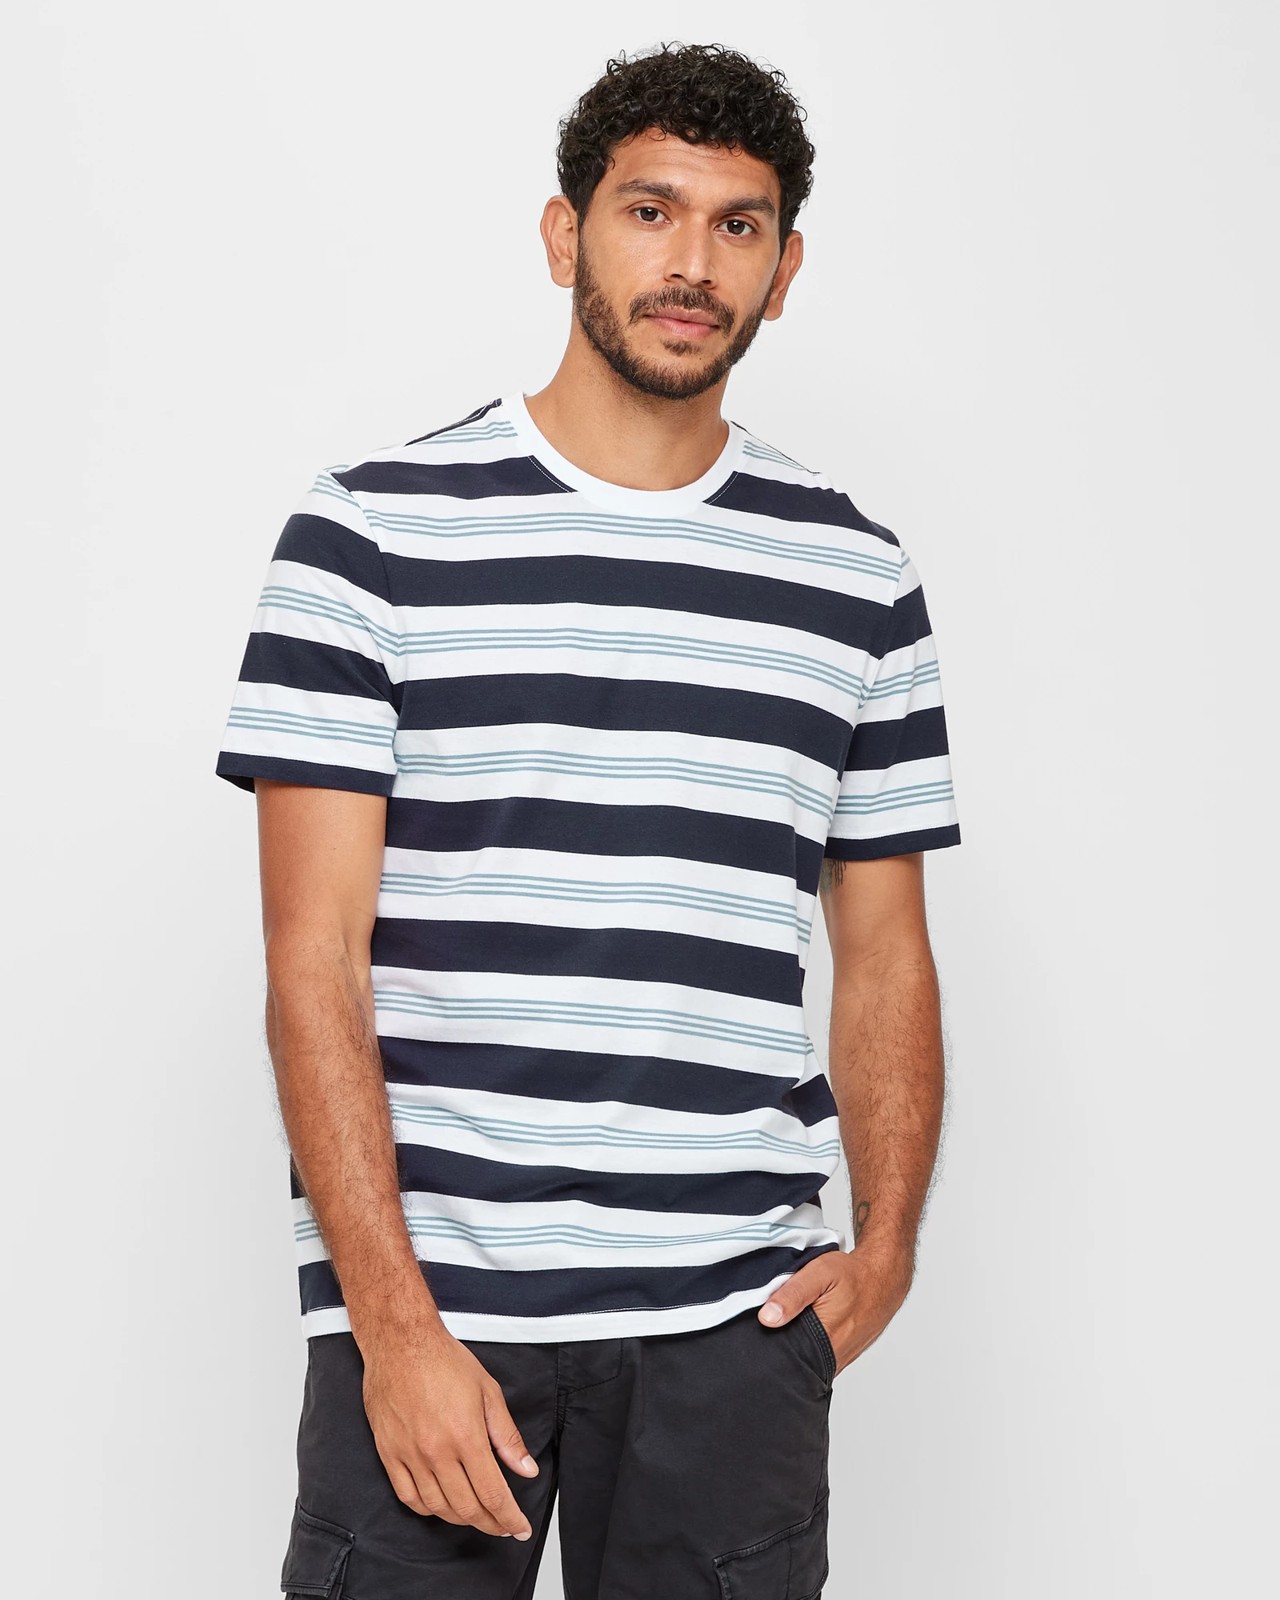 Black White Striped Shirt : Target